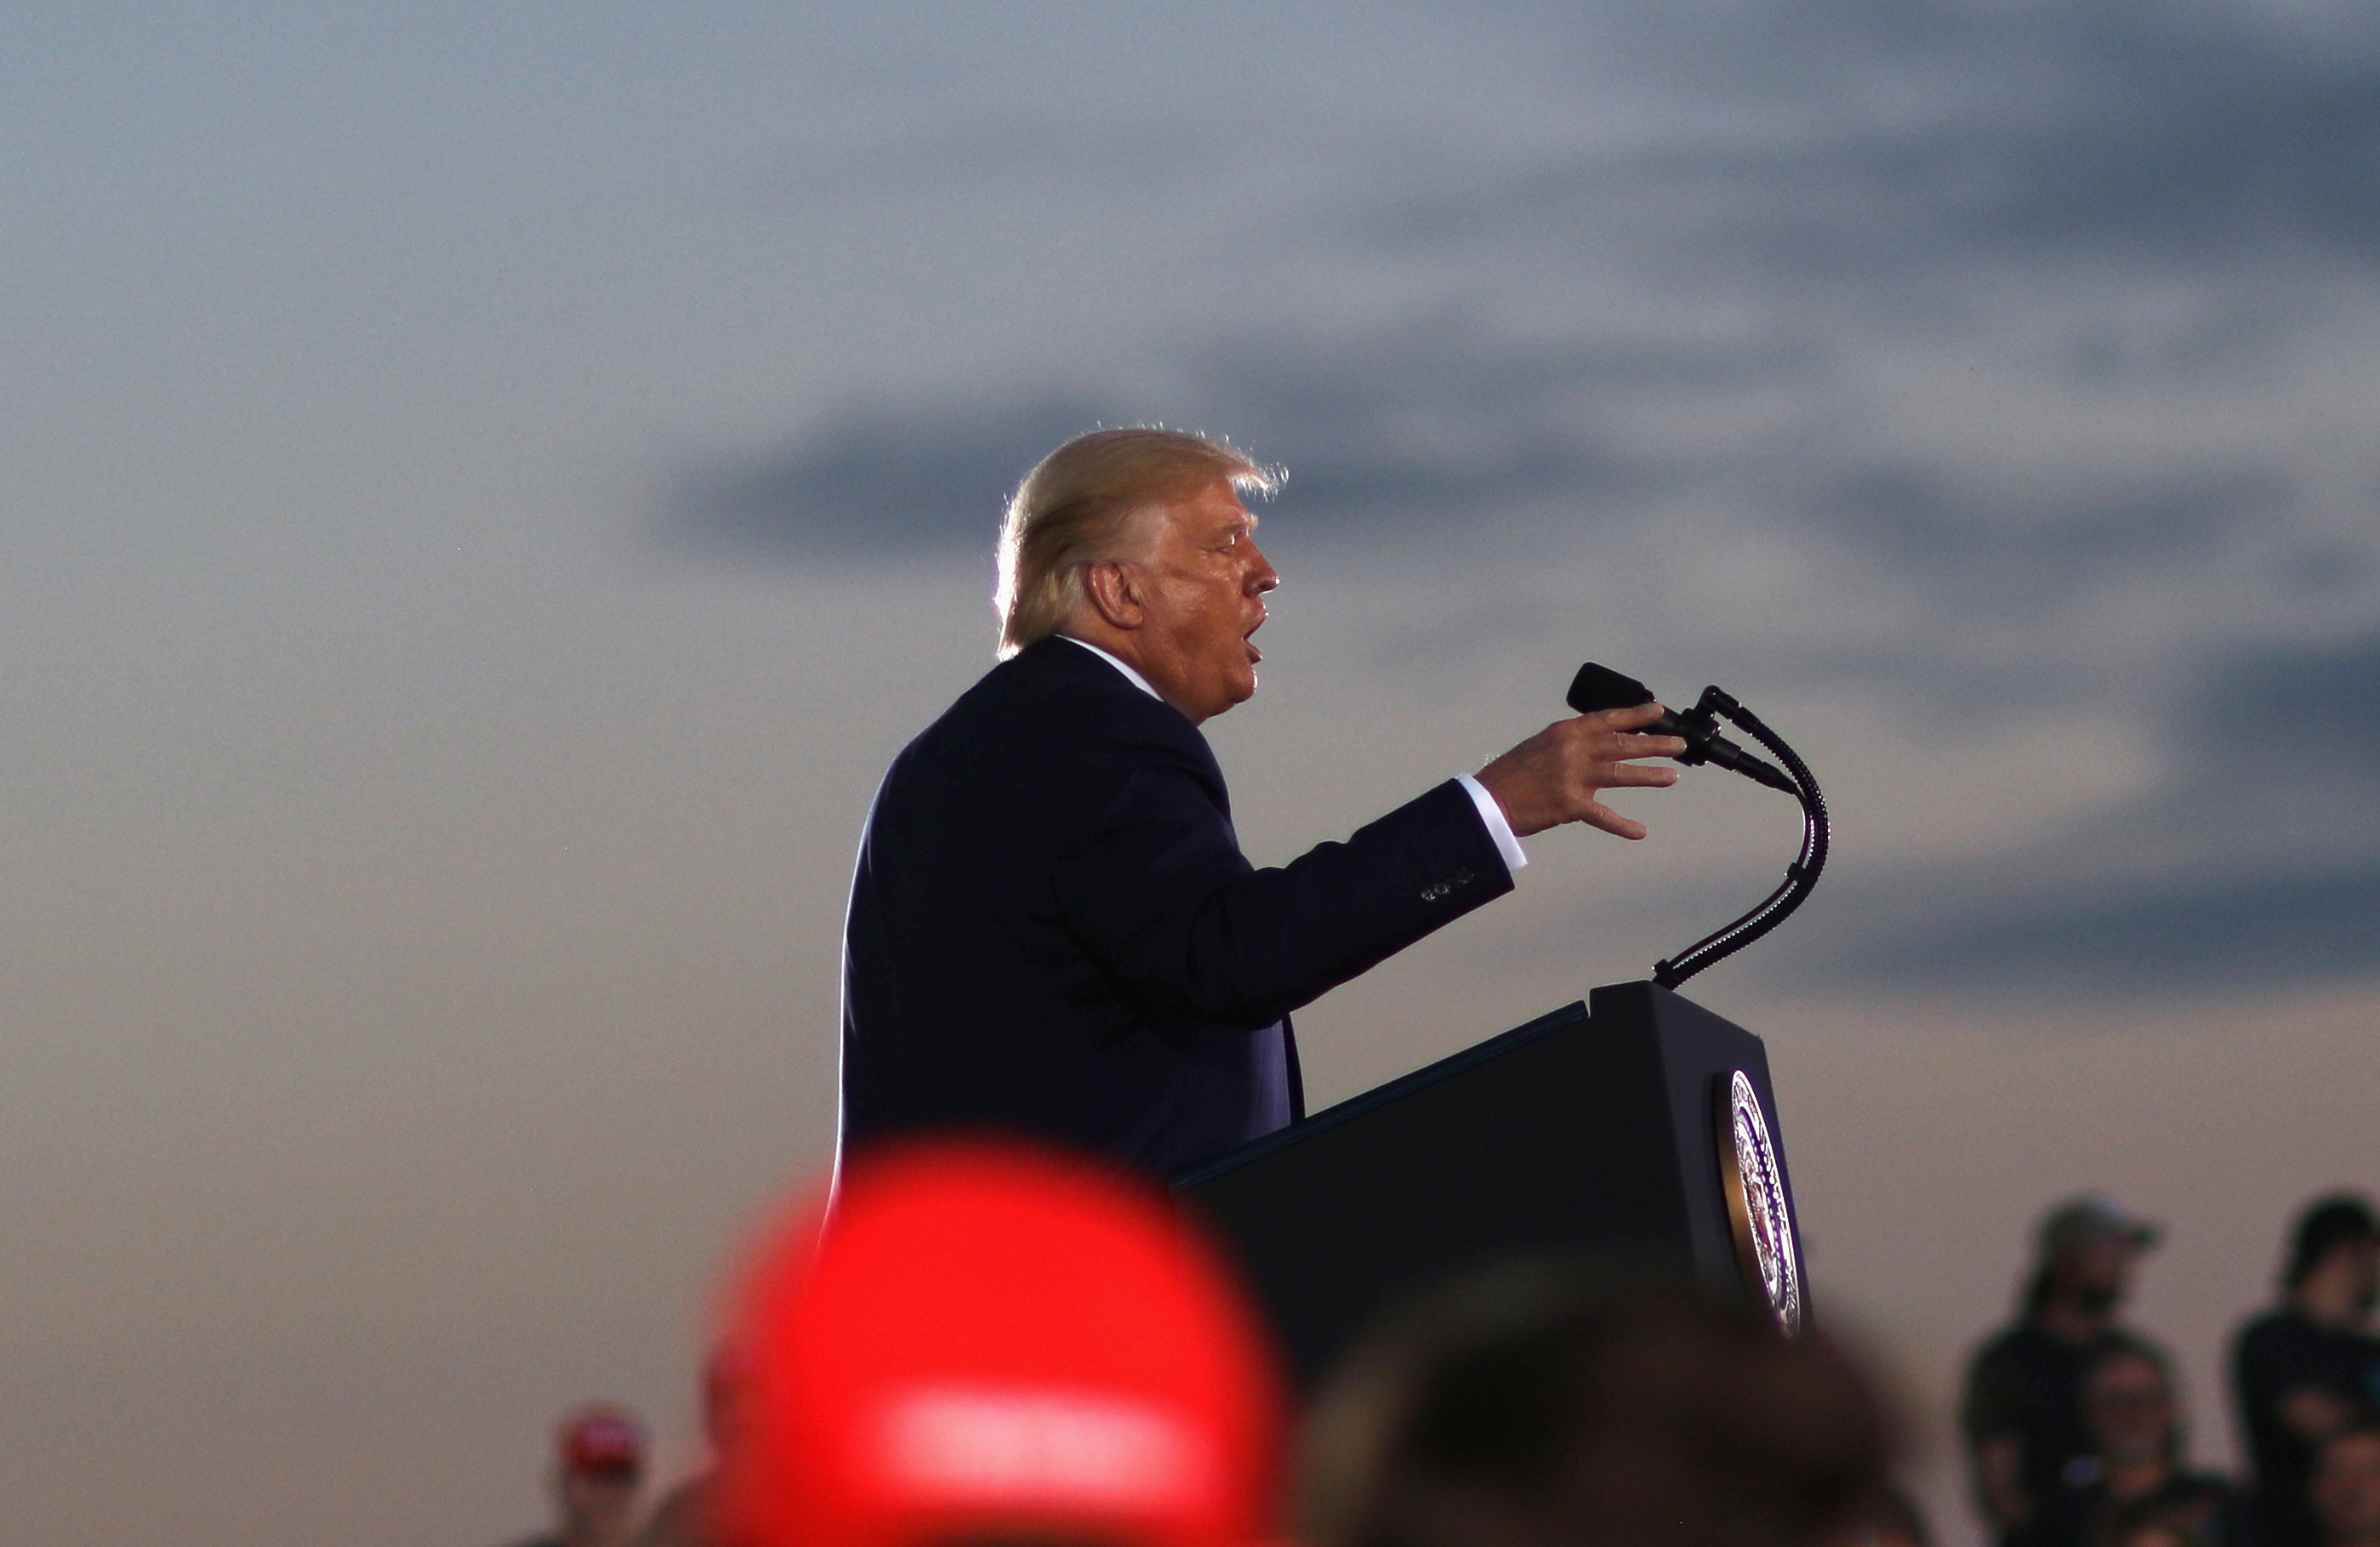 Donald Trump da un discurso de campaña mientras espera una aceleración de la recuperación económica, el jueves en el Aeropuerto Arnold Palmer de Latrobe, Pennsylvania (REUTERS/Leah Millis)